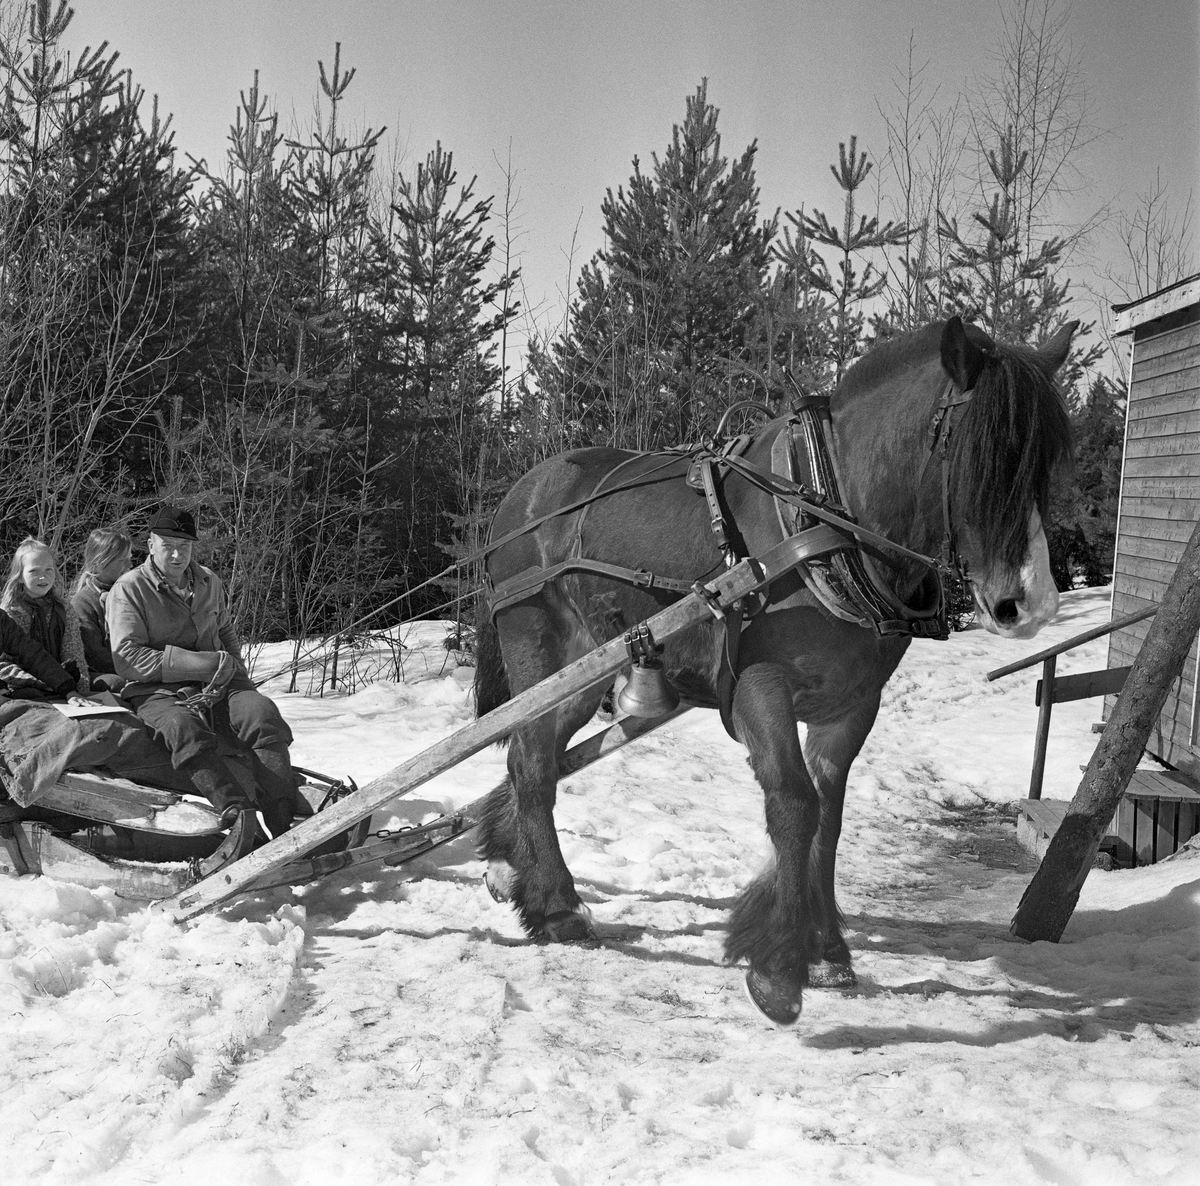 Jørgen Larsens arbeidshest «Blessen», fotografert på en velteplass i Stavåsen i Elverum i Hedmark. Larsen var tømmerkjører og bodde i Hernes. Fotografiet ble tatt vinteren 1971. Hesten hadde arbeidssele og var forspent en tømmerrustning (todelt slede). Det var seletøyet som gjorde det mulig å trekke, bremse og rygge med hesten.  Dette er en bogtresele med ei stoppet ringpute, som var tredd over hodet på hesten slik at den lå an mot nakken og bringen på trekkdyret. I bogtrærne var det fastsydd «drotter», kraftige draglær, som endte i trekkpunkter ved overgangen mellom hestens bog- og brystparti. Der var det en «orring» som var forankringspunkt for «bukgjorden» (reima under den fremre delen av hestebuken) og «oppholdsreimene», som var festet i ytterendene av «høvret», ei bøyle som var montert på tvers av hestens manke med avrundete treplater, «høvreballer», som anleggspunkter. På oversida av høvret var det ringer, som tømmene var ført gjennom. «Bakselen» - ei  kraftig reim som var ført fra drotten rundt hestens bakpart (lårene og under halen), og som ble holdt oppe av ei «ryggreim» og ei «kryssreim» - gjorde det mulig for hesten å bremse lassene i utforbakker. «Draget» (skjækene) var festet i en jerntapp («oren») som var smidd sammen med orringen ved hjelp av en selepinne. Selereimene skulle justeres slik at det gikk ei noenlunde rett linje fra drotten gjennom skjækene til trekkpunktene fremst på den doningen hesten skulle trekke - her festepunktet for bøyla på skjækene. På den fremre delen av den ene skåka var det festet ei bjelle som skulle signalisere for andre som ferdes langs kjørevegen at det kom en hest med tung last.

Her var Jørgen Larsen i ferd med å stanse framfor koia han var innkvartert i uten tømmerlass. Sleden hans var en såkalt «rustning», også kalt «geitdoning» eller «bukk og geit». Dette var en todelt sledemodell som, når den var pålesset, var forbundet med en Y-formet kjetting (ei «trosse»). Når doningen skulle kjøres «tomreipes» tilbake mot hogstteigene hvor det var mer tømmer å hente, var det vanlig å gjøre som Jørgen Larsen hadde gjort her, nemlig å legge geita oppå bukken og deretter ta plass på den øverste sleden med en høysekk som sitteunderlag, før kjørekaren smattet på hesten og kjørte til skogs. Høyet i sekken ble gitt til hesten slik at den hadde noe å ete av mens den skulle stå stille under på- og avlessing.